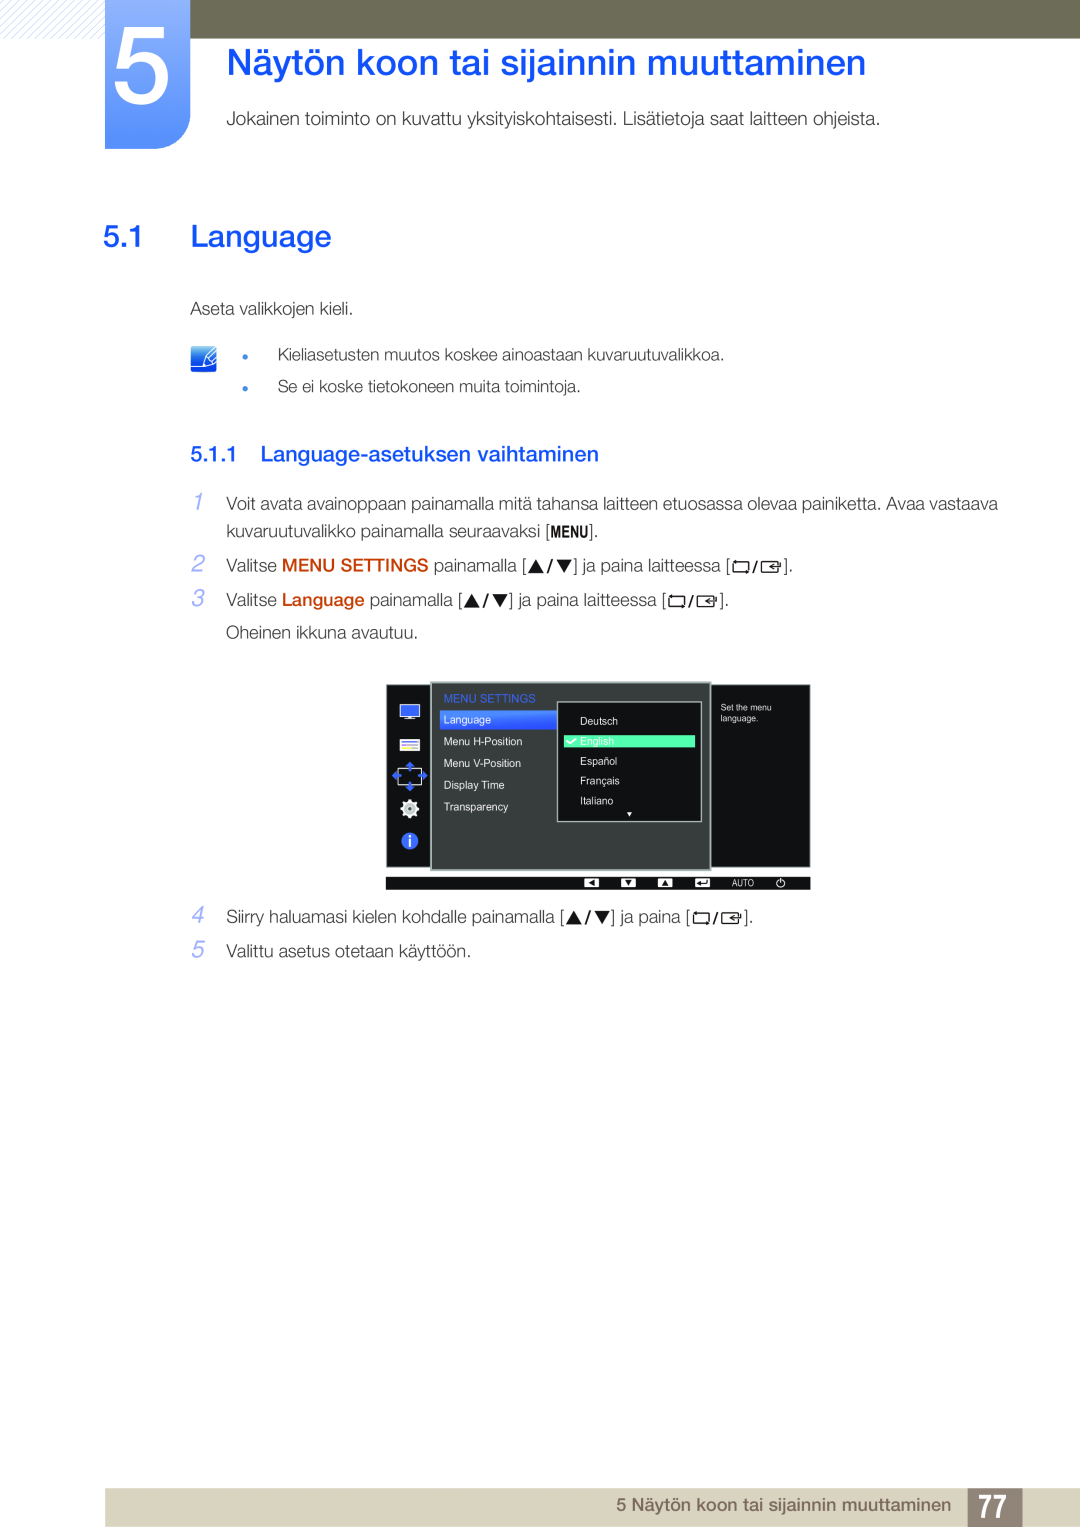 Samsung LS24E65UDW/EN, LS23E65UDC/EN manual 5 Näytön koon tai sijainnin muuttaminen, Language-asetuksen vaihtaminen 